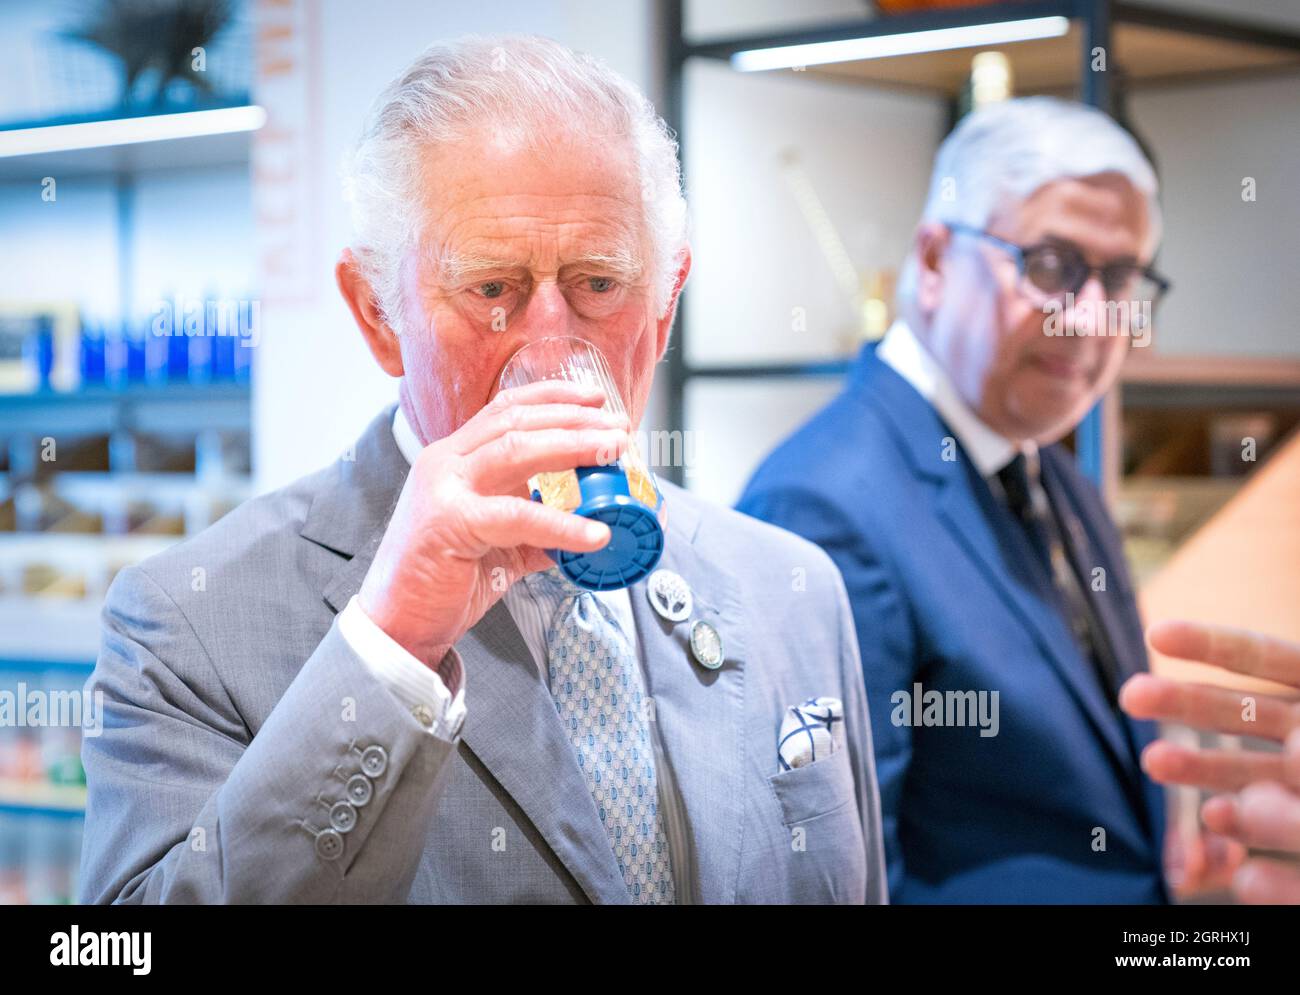 Il Principe di Galles conosciuto come il Duca di Rothesay quando si trova in Scozia, durante una visita a Johnnie Walker Princes Street per aprire ufficialmente la nuova esperienza globale di whisky visitatori a Edimburgo. Data foto: Venerdì 1 ottobre 2021. Foto Stock